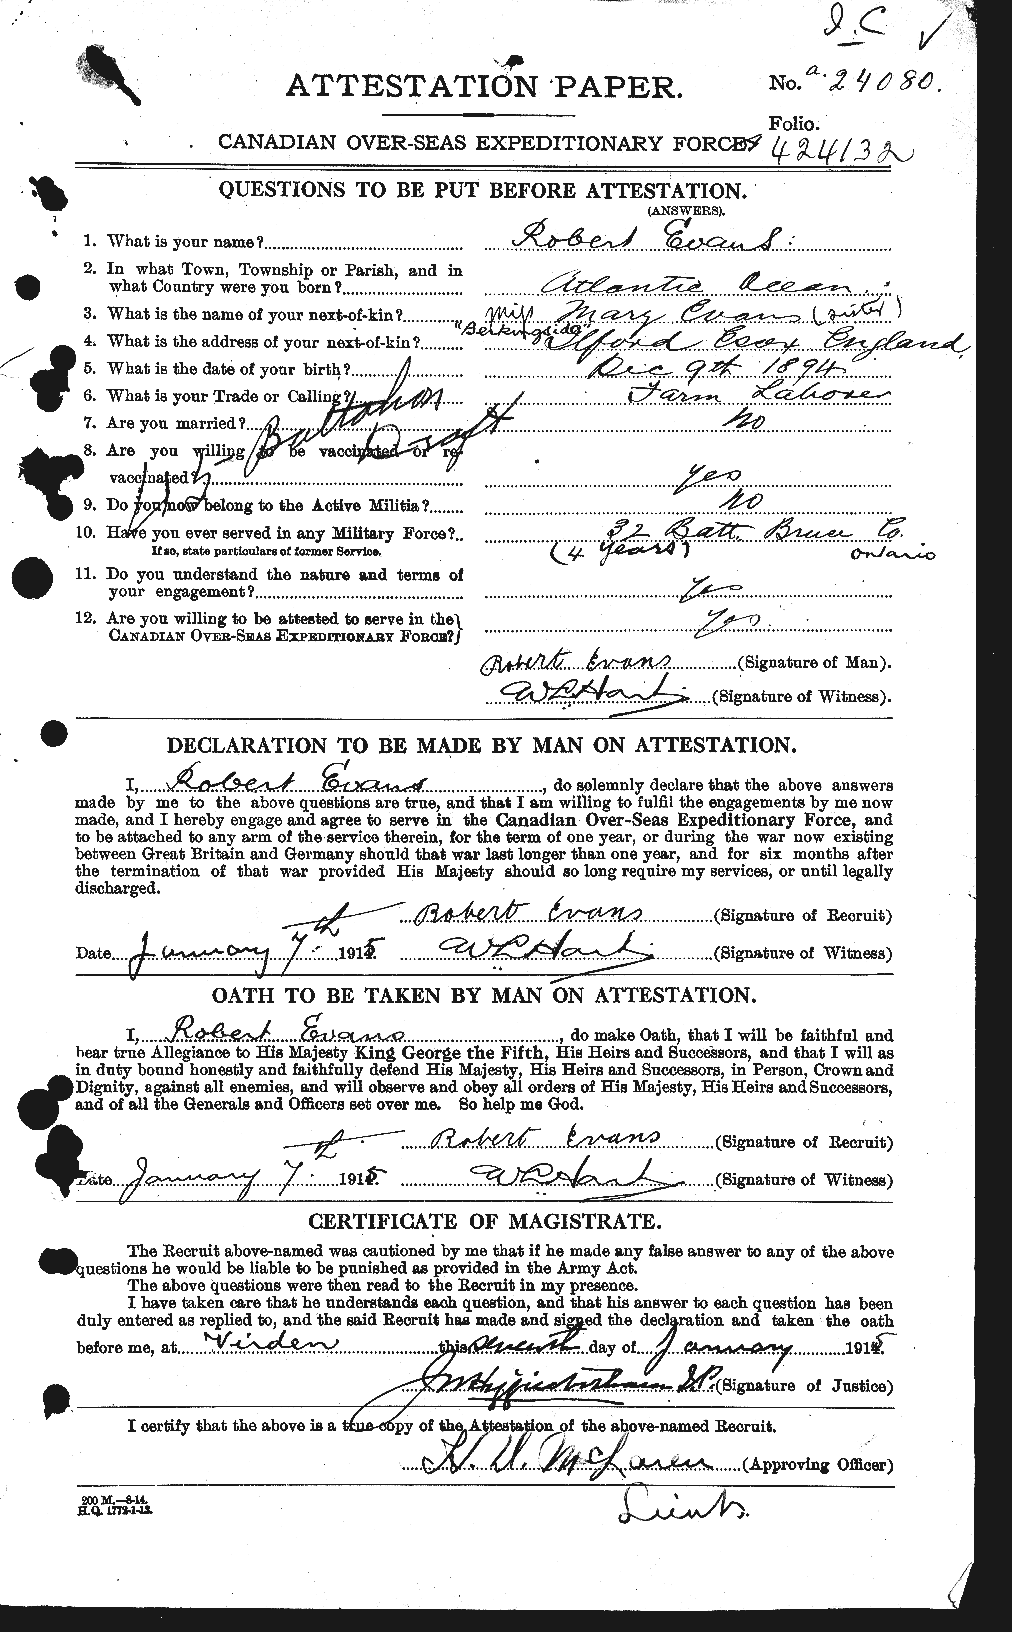 Dossiers du Personnel de la Première Guerre mondiale - CEC 313285a